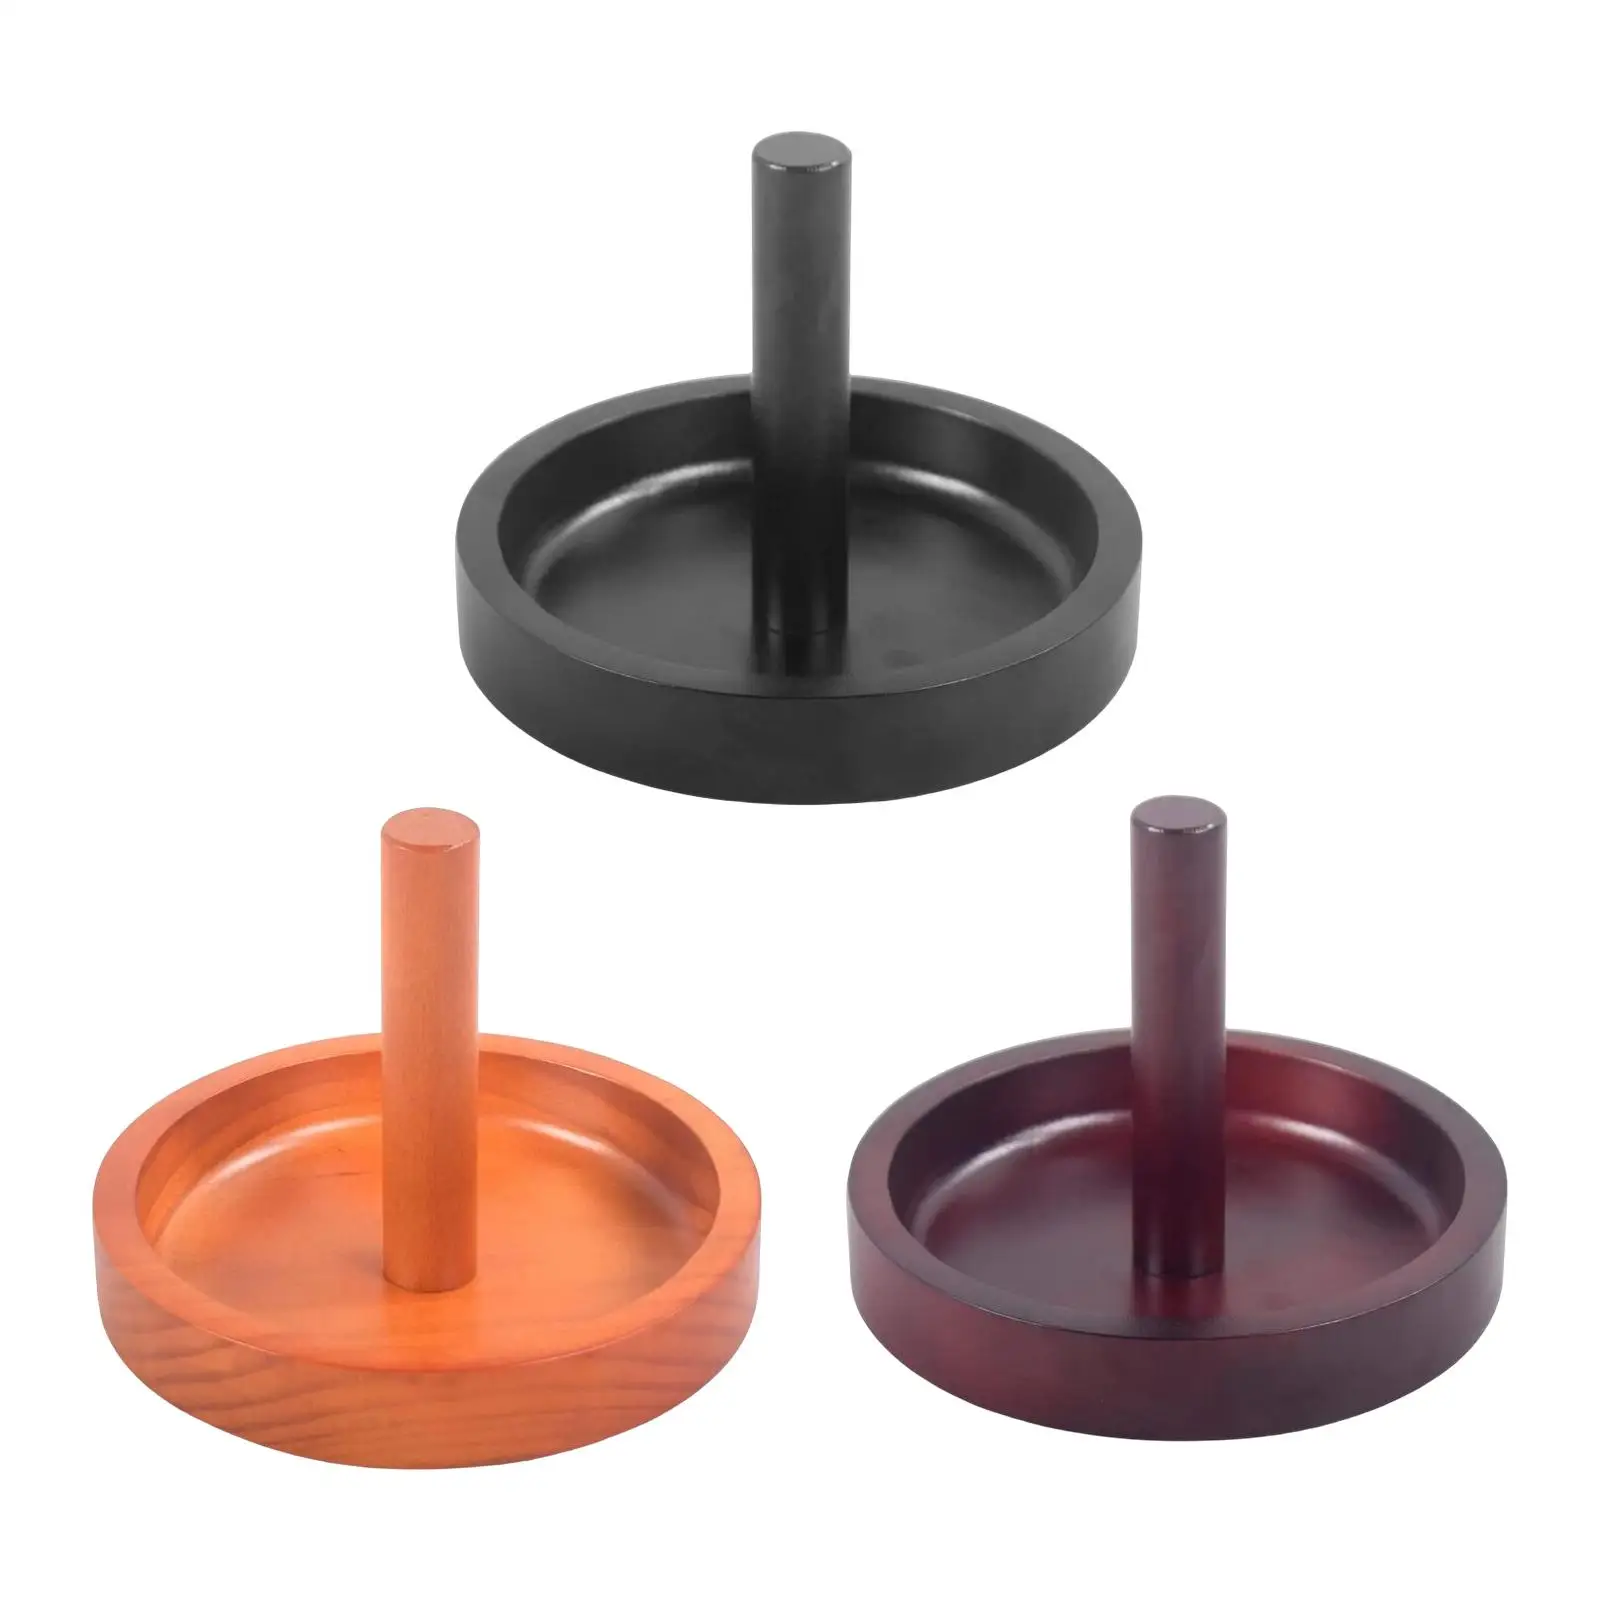 Billiard Cone Talc Bowl Cone Chalk Holder Durable Portable for Accessories